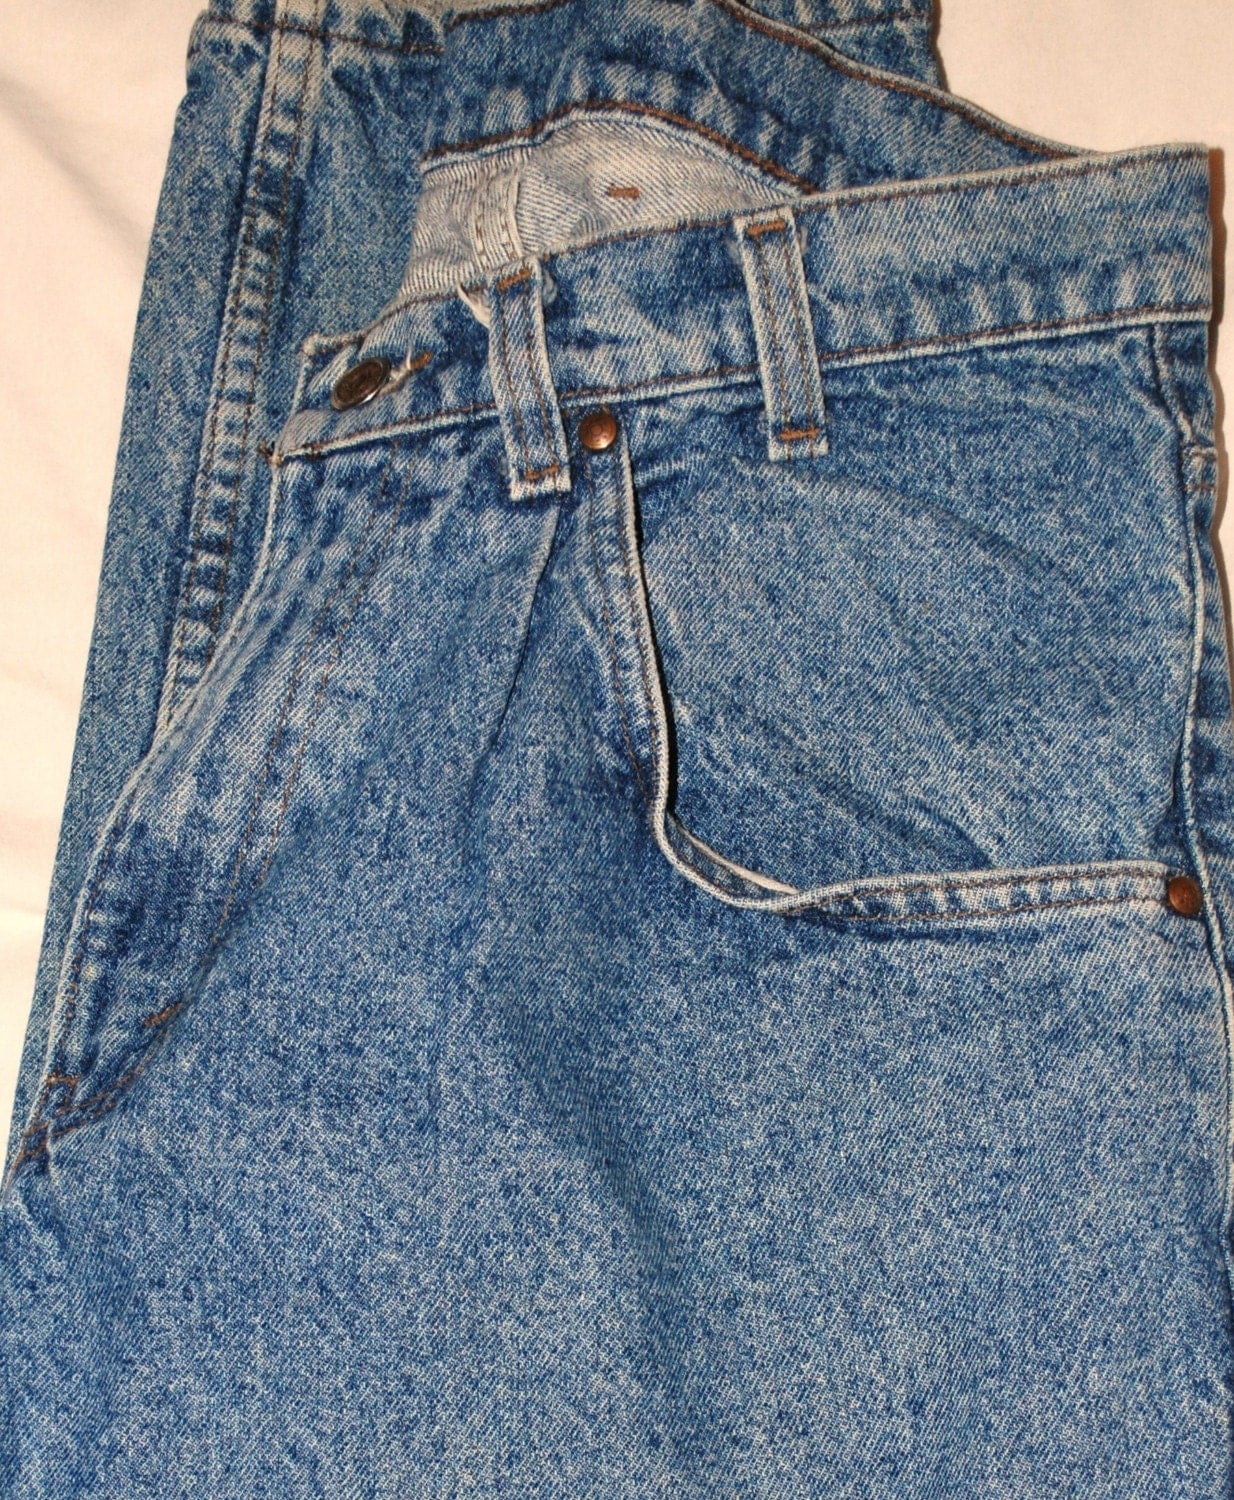 Vintage Men's Levi Jeans 33x32 Silver Tab on back pocket.